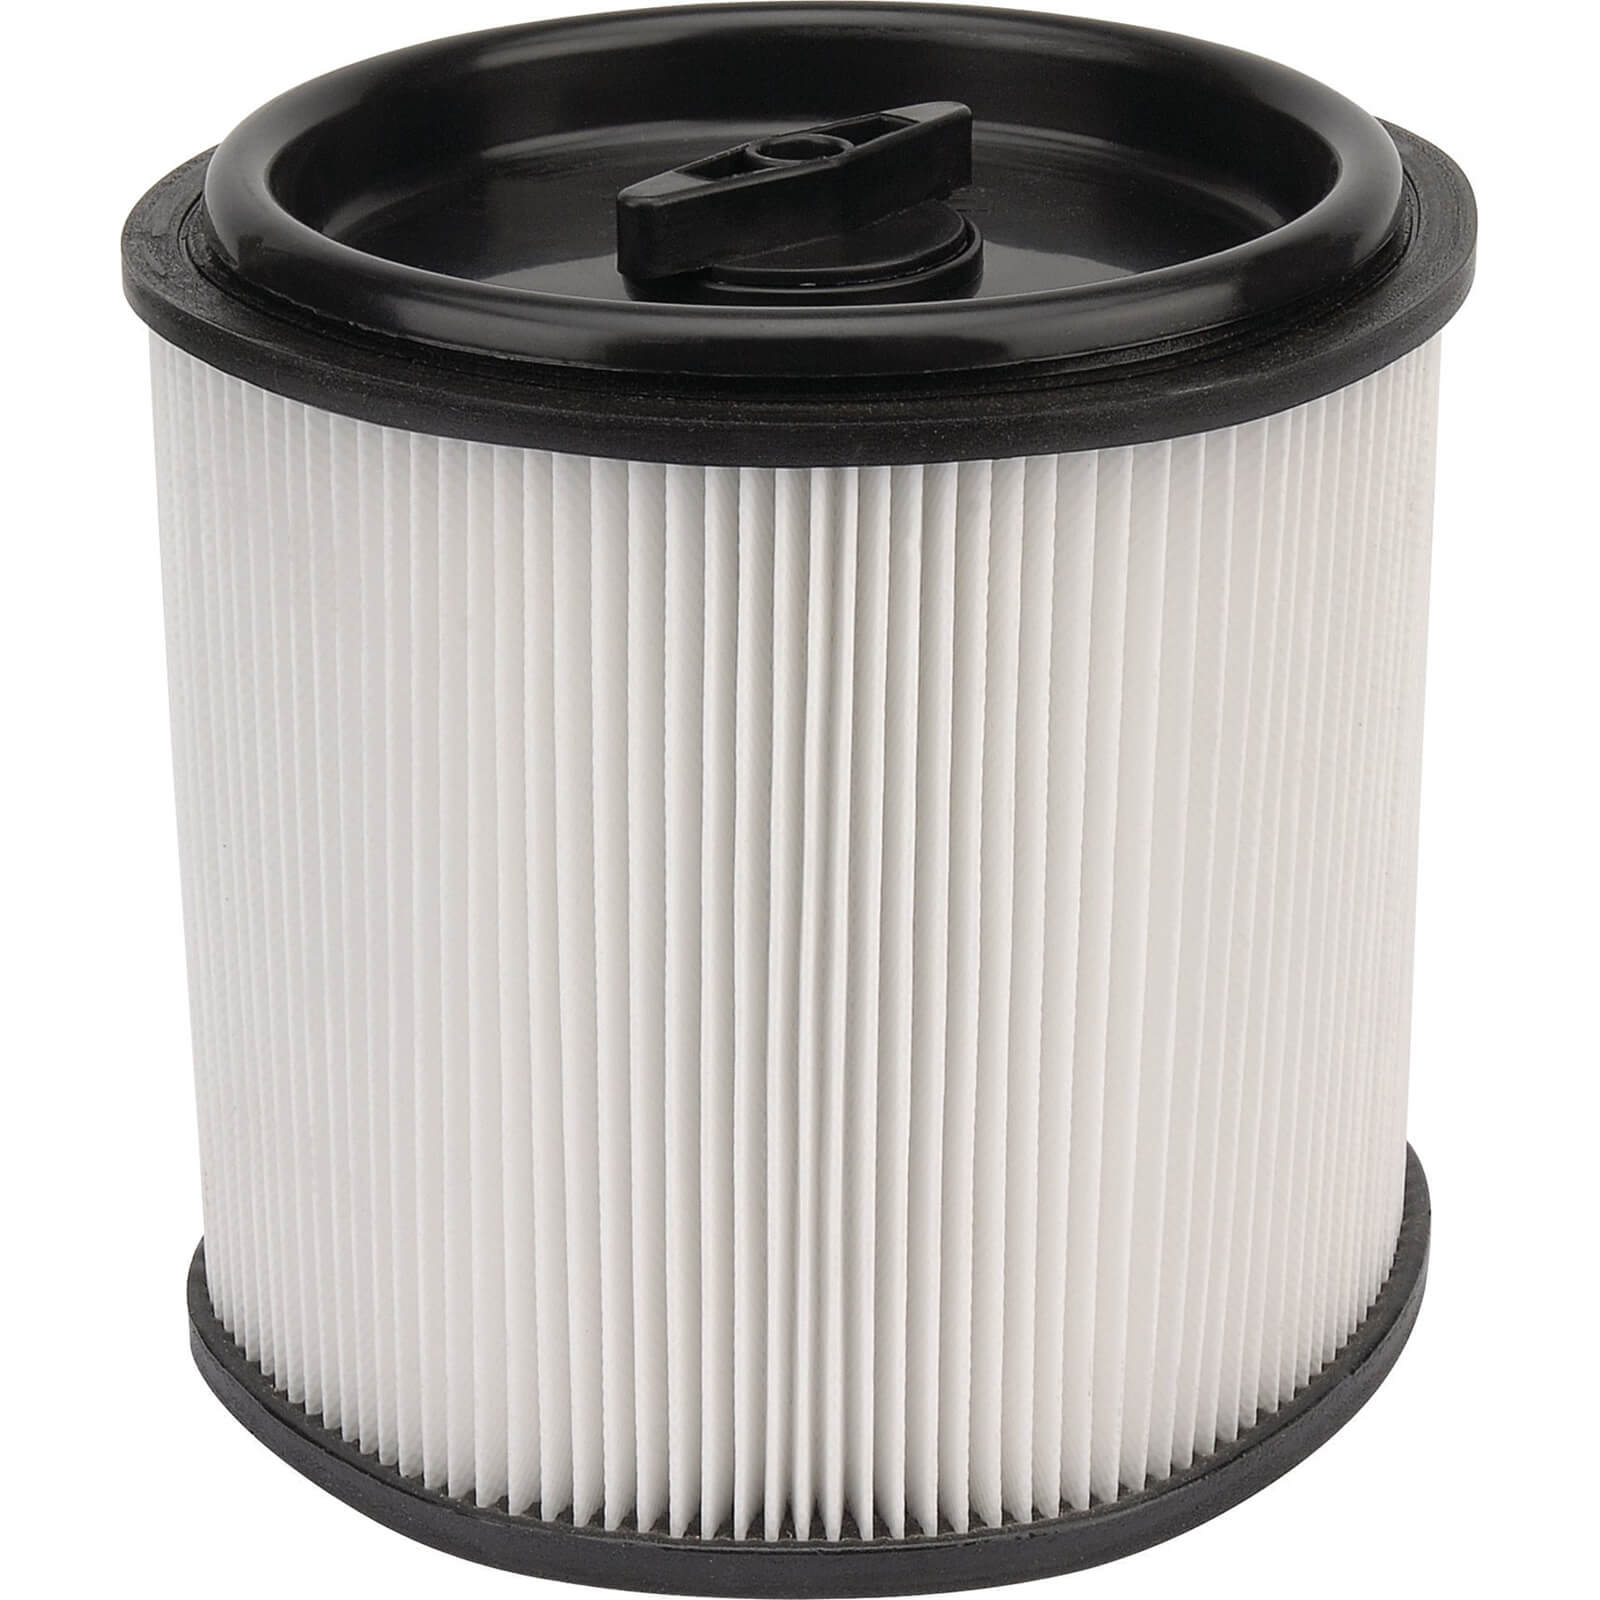 Image of Draper Cartridge Filter for 36313 Vacuum Cleaner